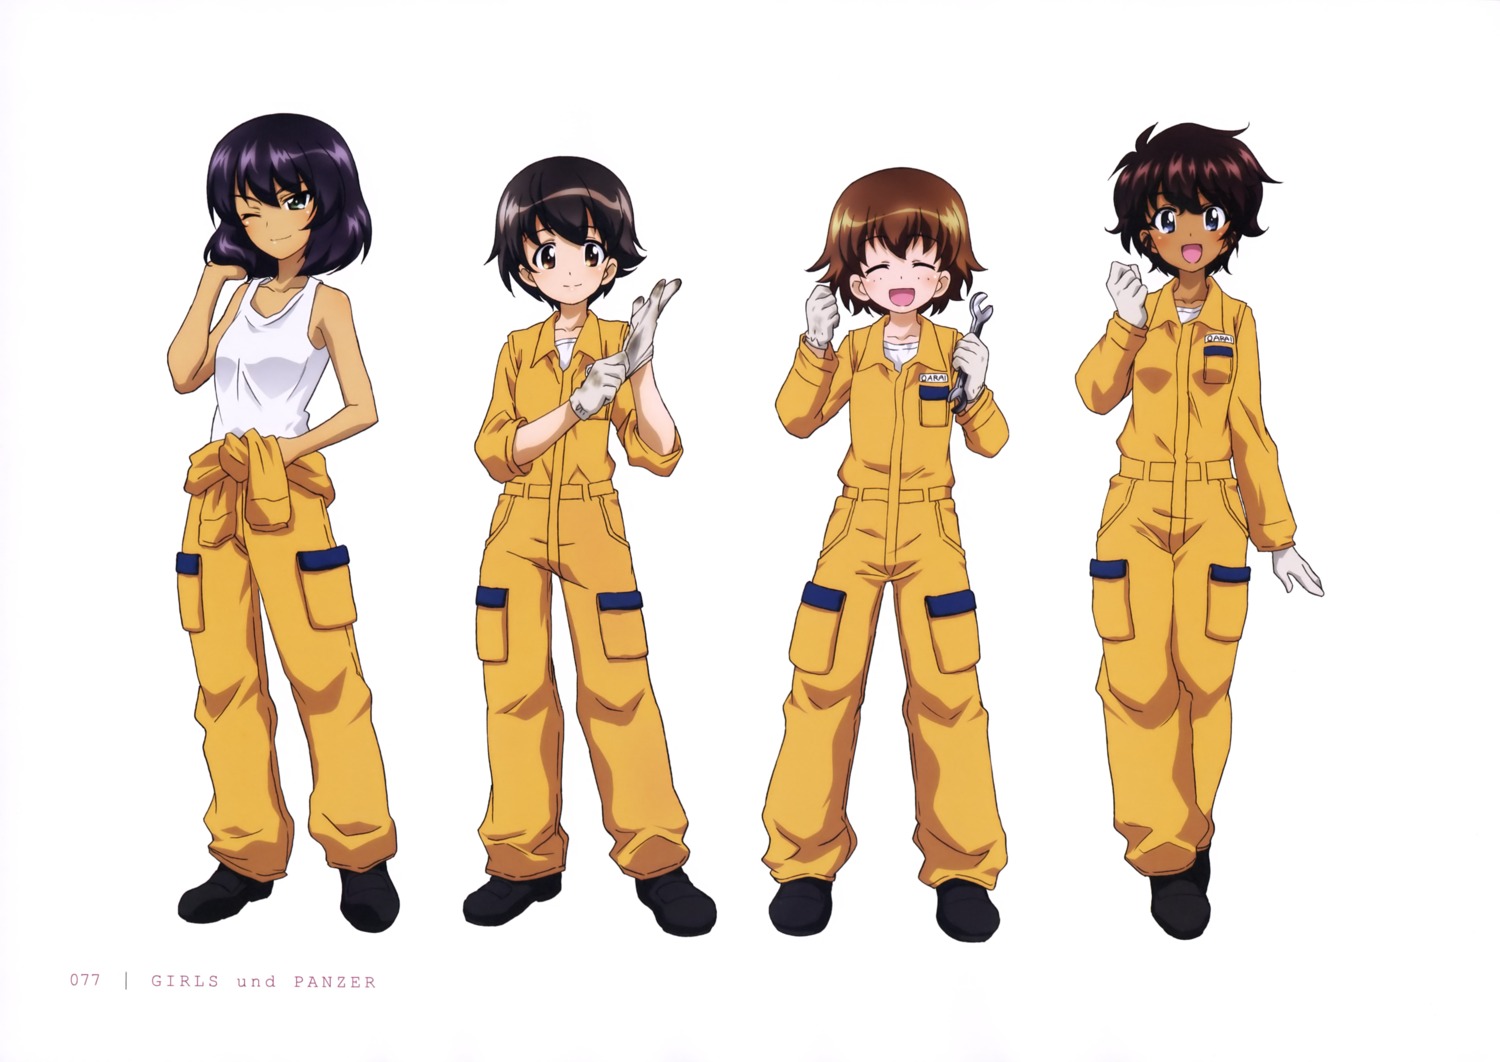 girls_und_panzer hoshino_(girls_und_panzer) nakajima_satoko suzuki_(girls_und_panzer) tsuchiya_(girls_und_panzer) uniform